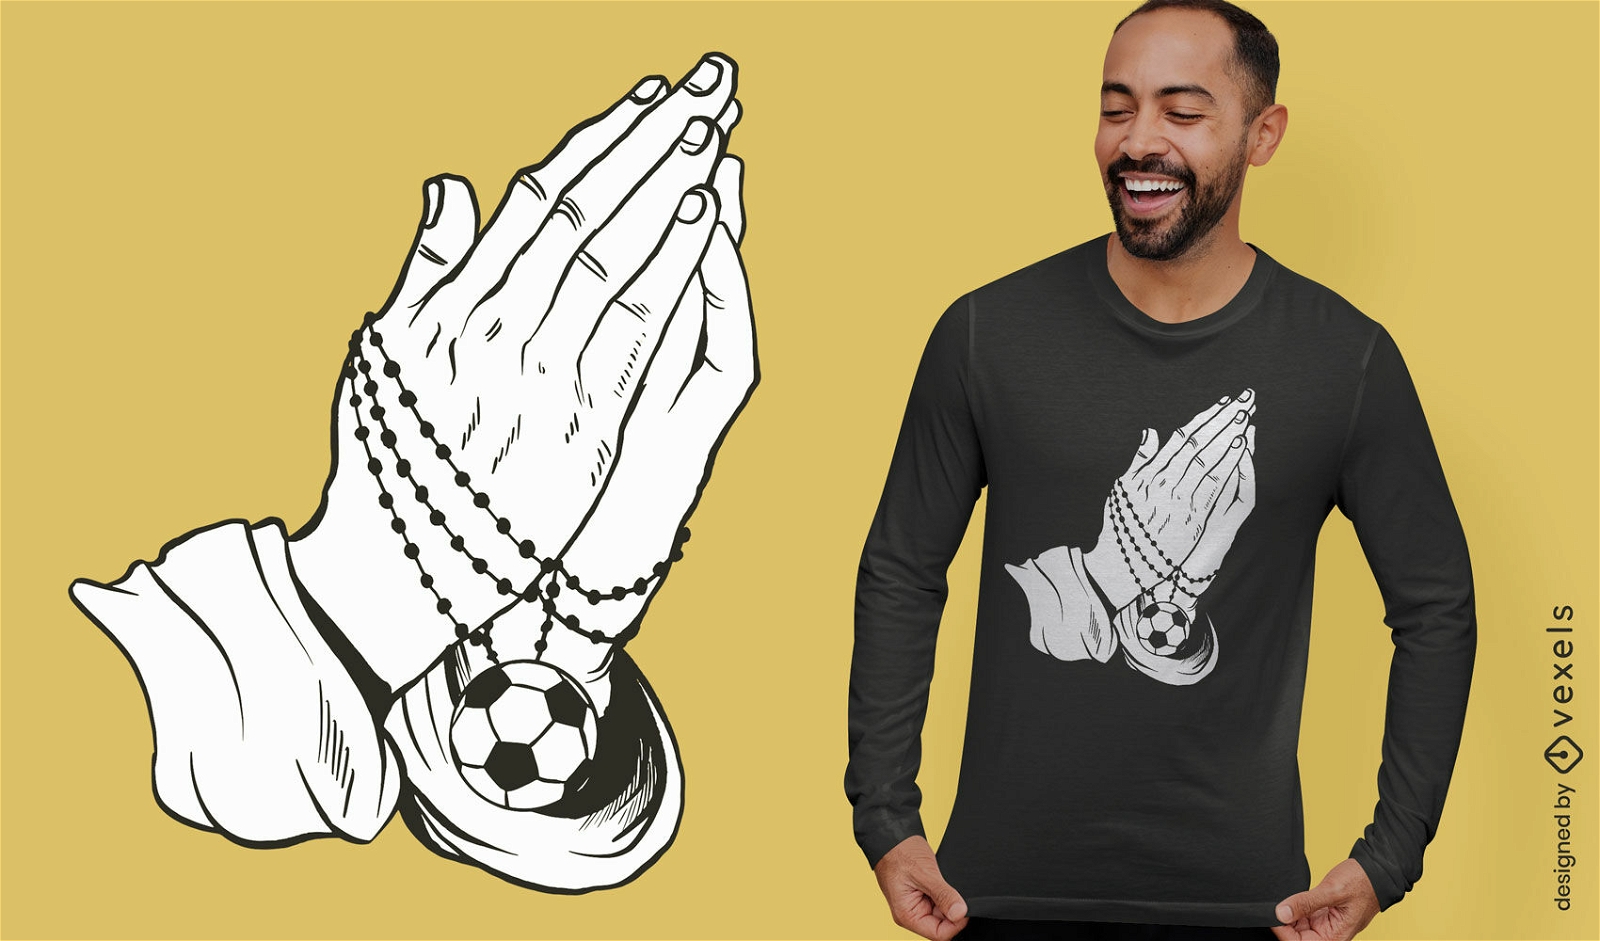 Diseño de camiseta de fútbol de manos rezando.